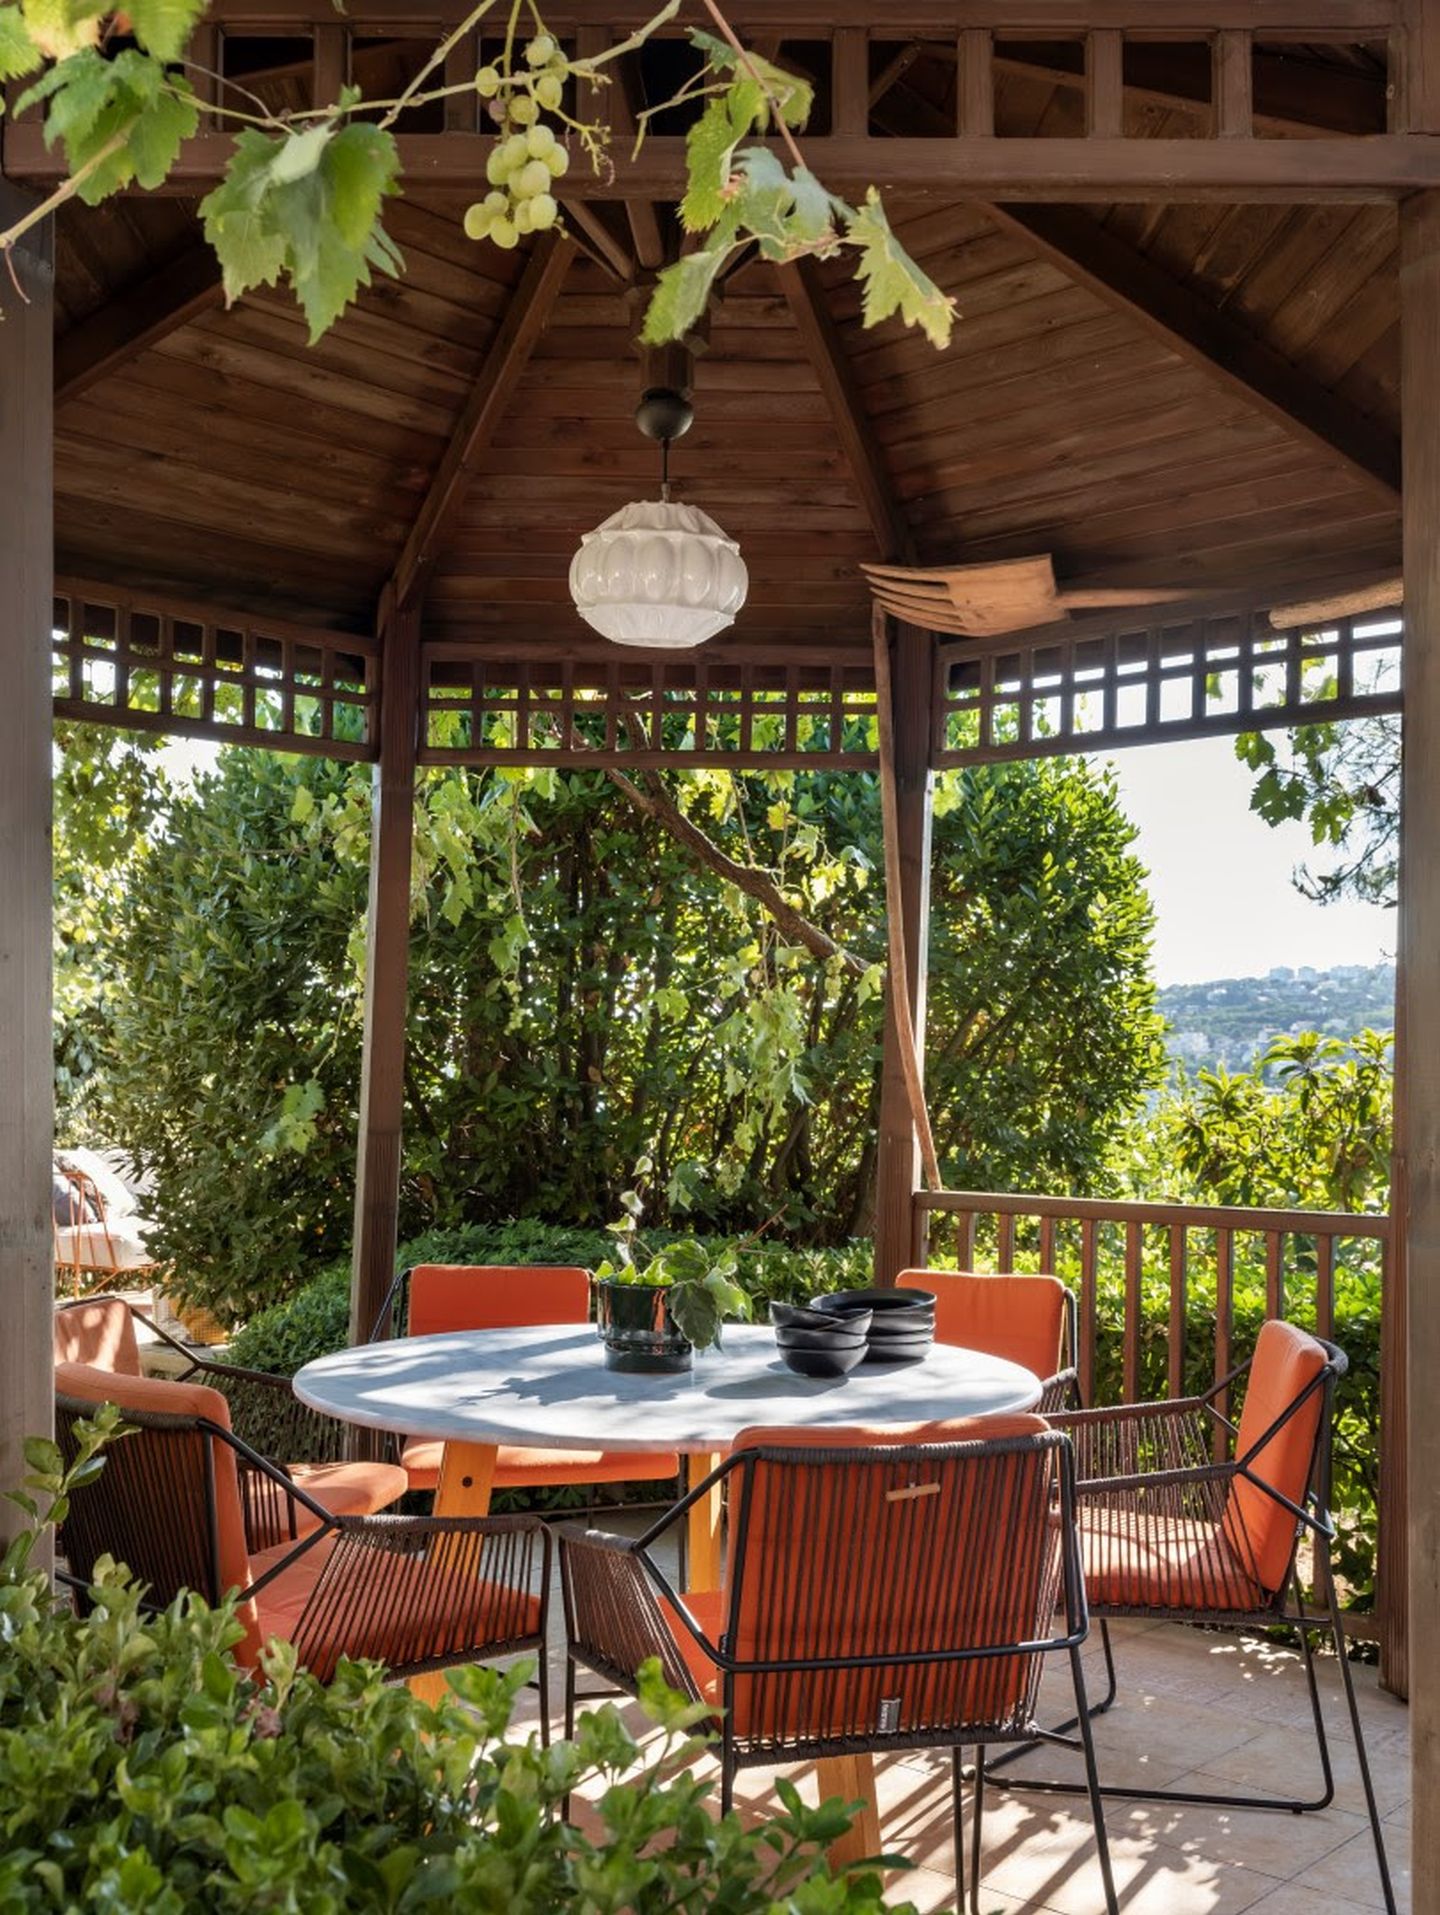 Foișorul este locul perfect pentru masa din grădină, prilej de socializare în aer liber.